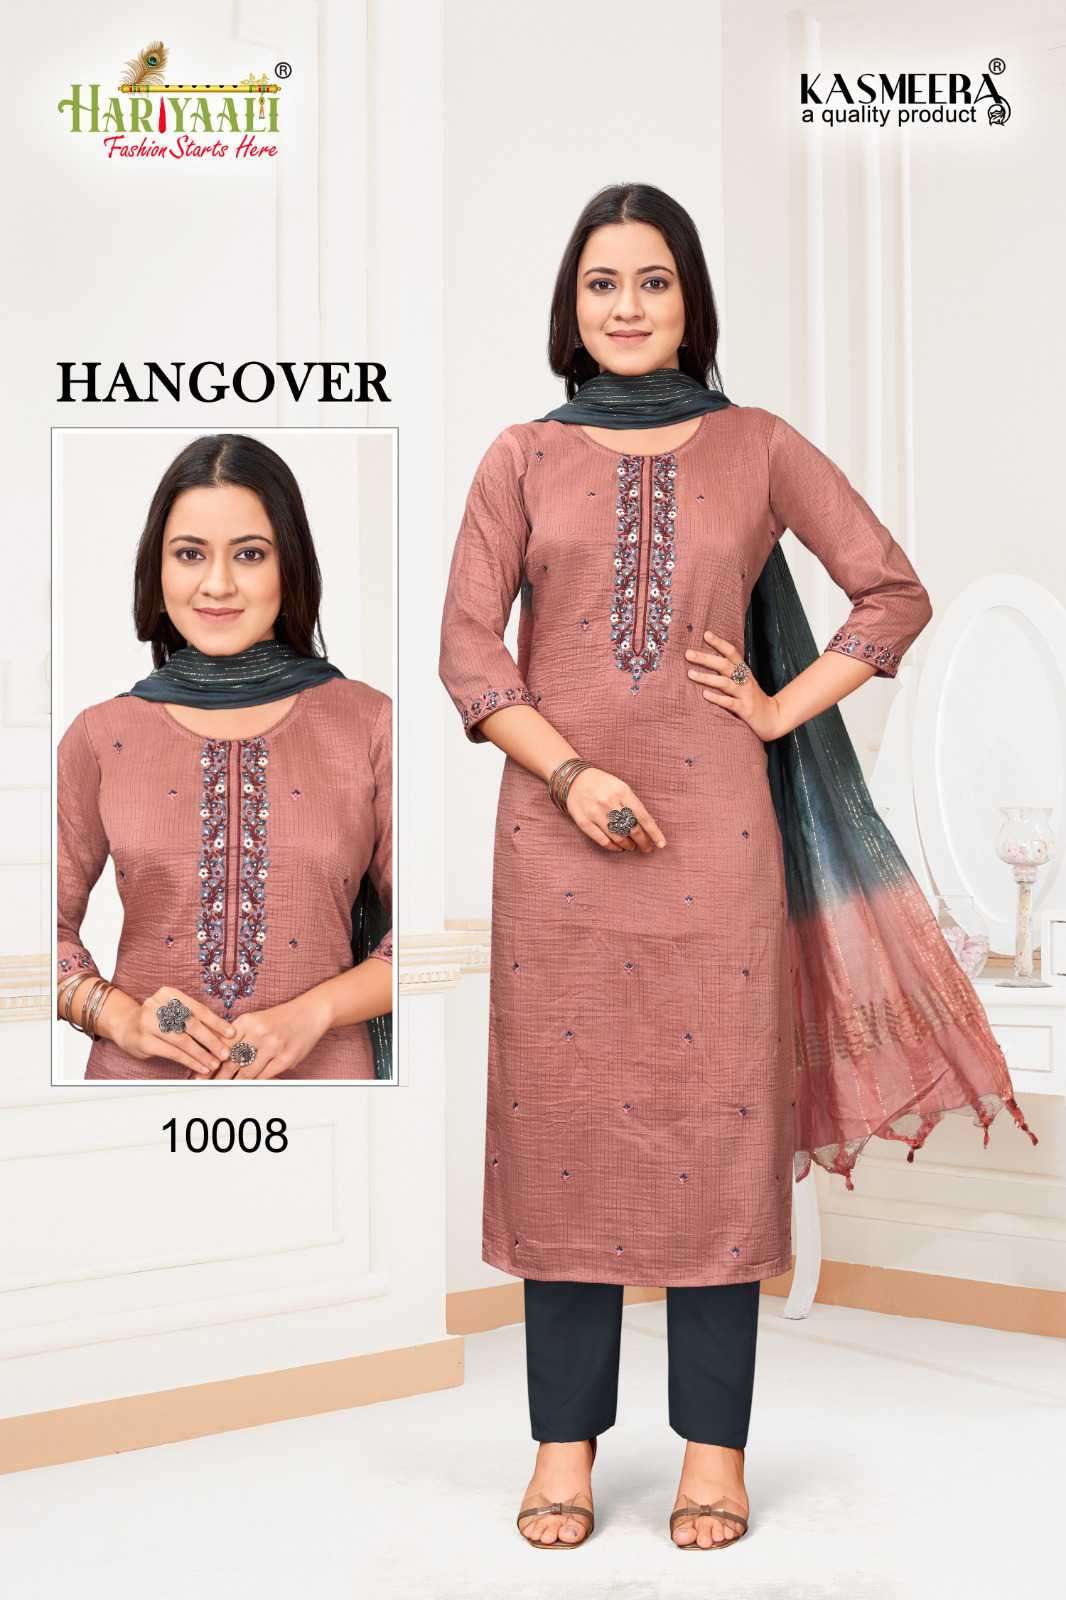 Hariyaali Hangover Fancy Silk Ethnic Wear Combo Designs Suits Dealers